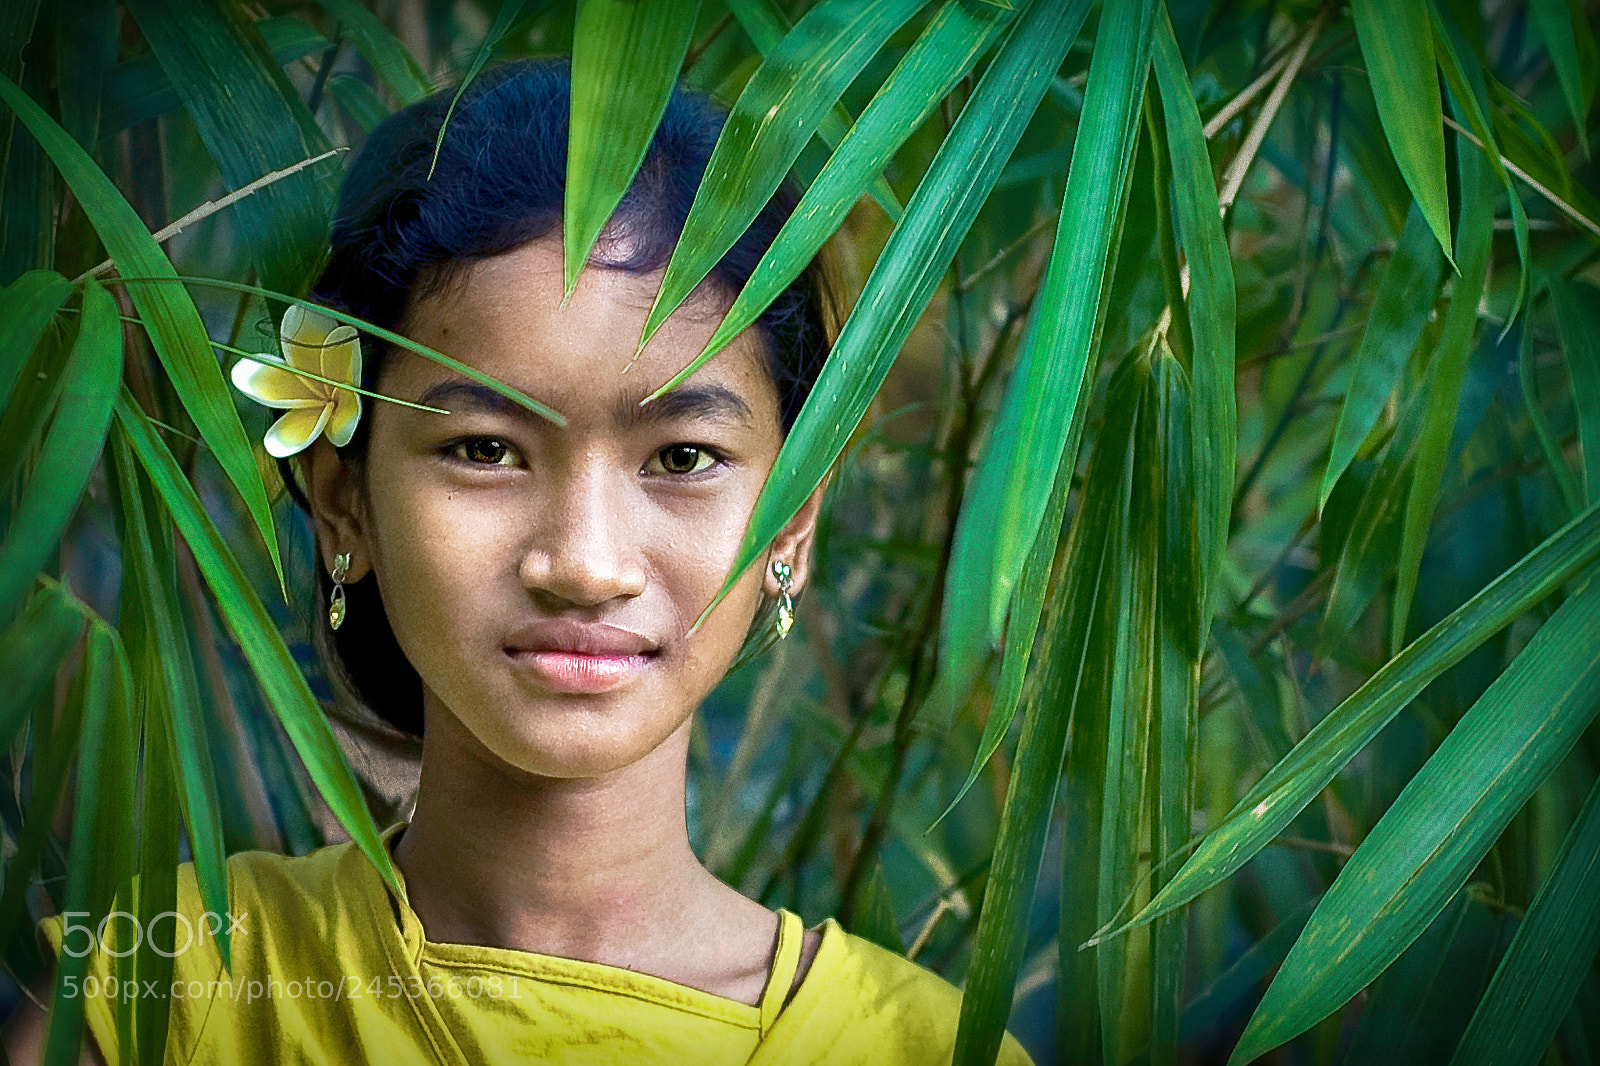 Nikon D70 sample photo. Youra, cambodia photography